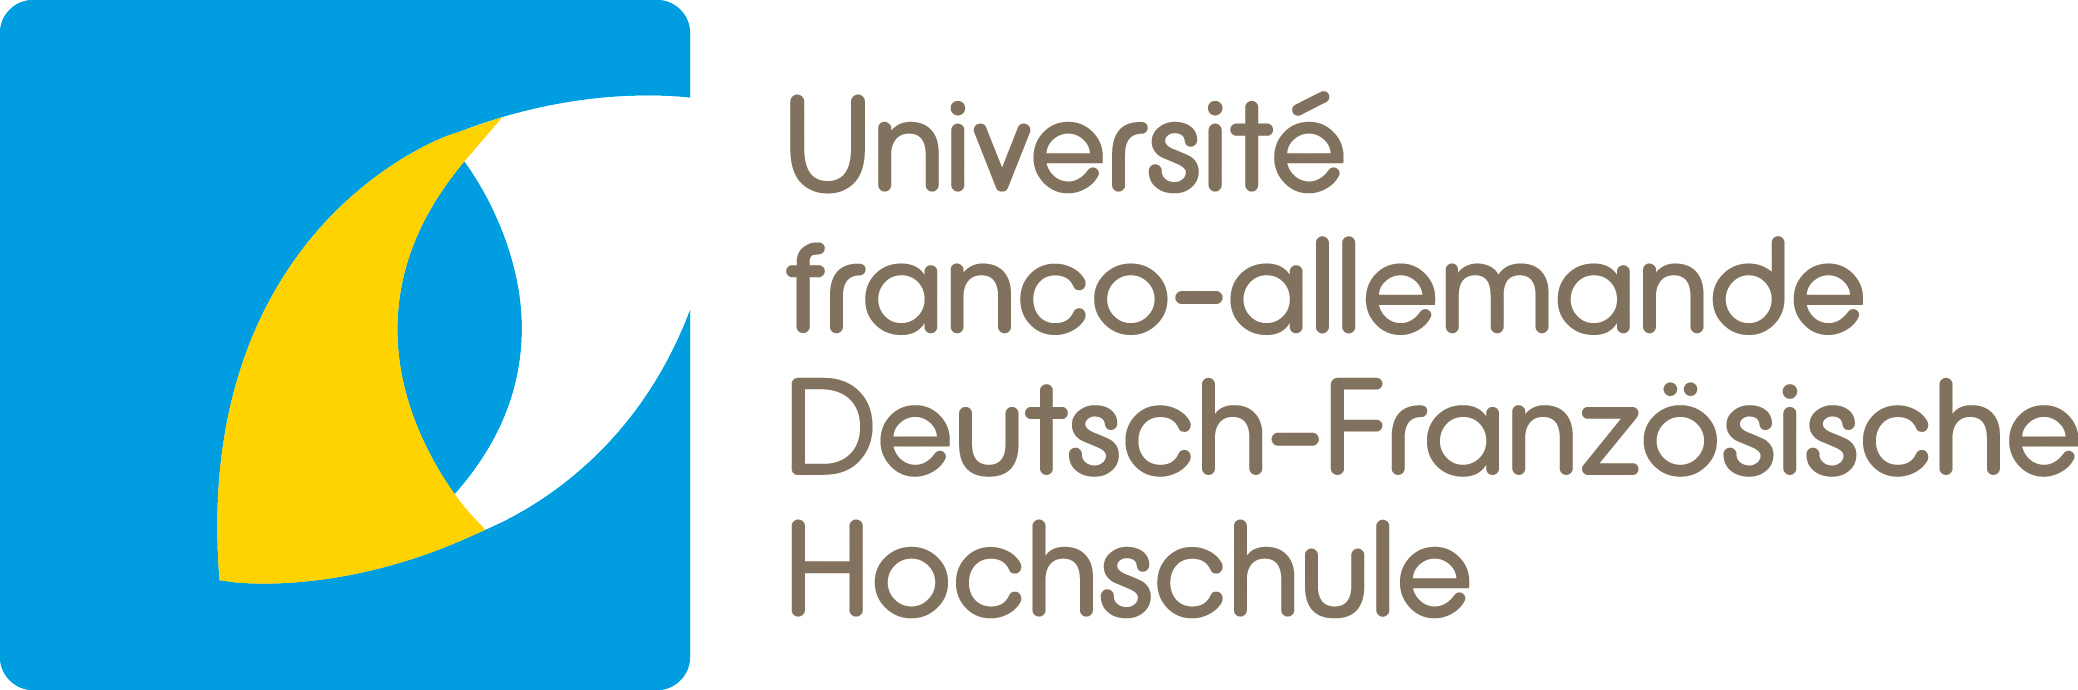 Deutsch-Französische Hochschule (DFH)